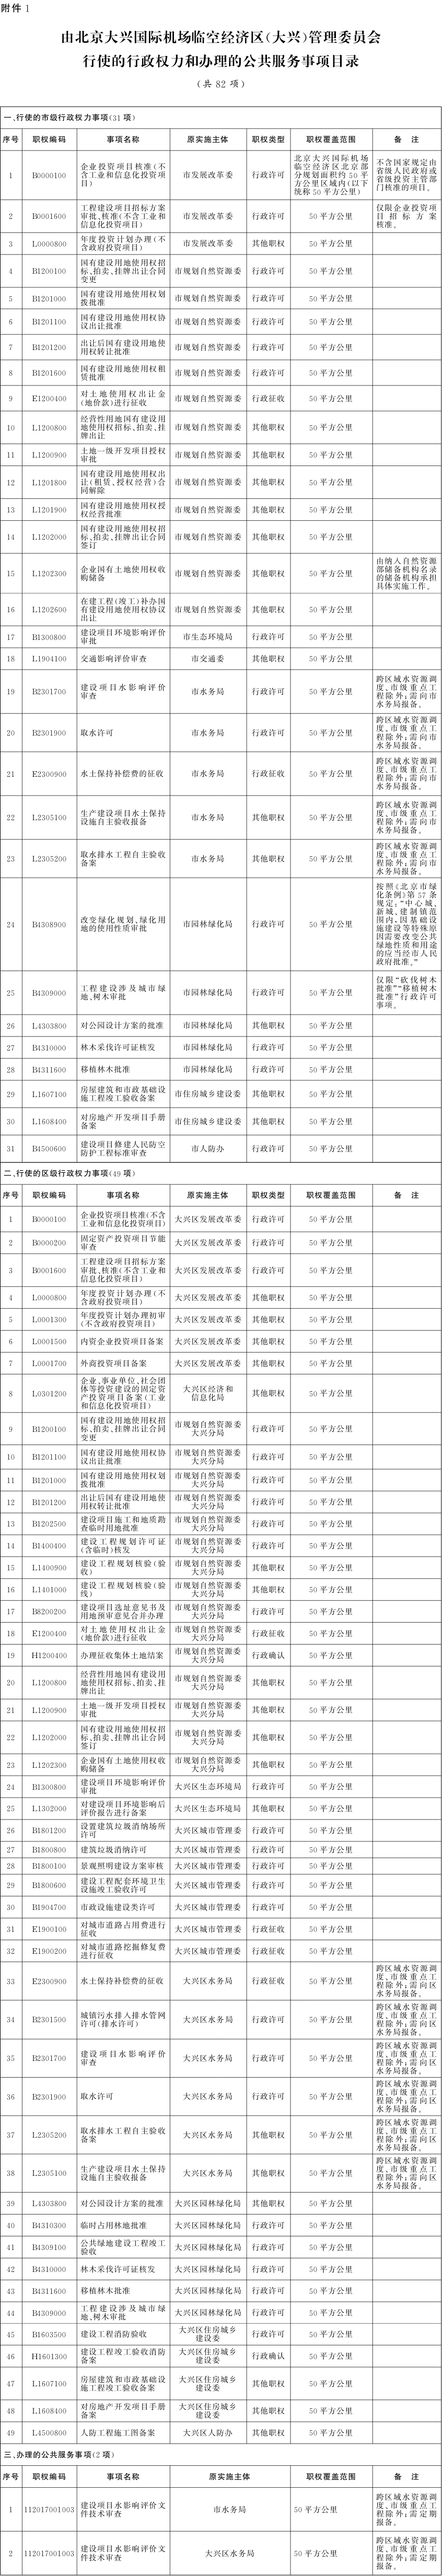 附件1：由北京大兴国际机场临空经济区(大兴)管理委员会行使的行政权力和办理的公共服务事项目录.png